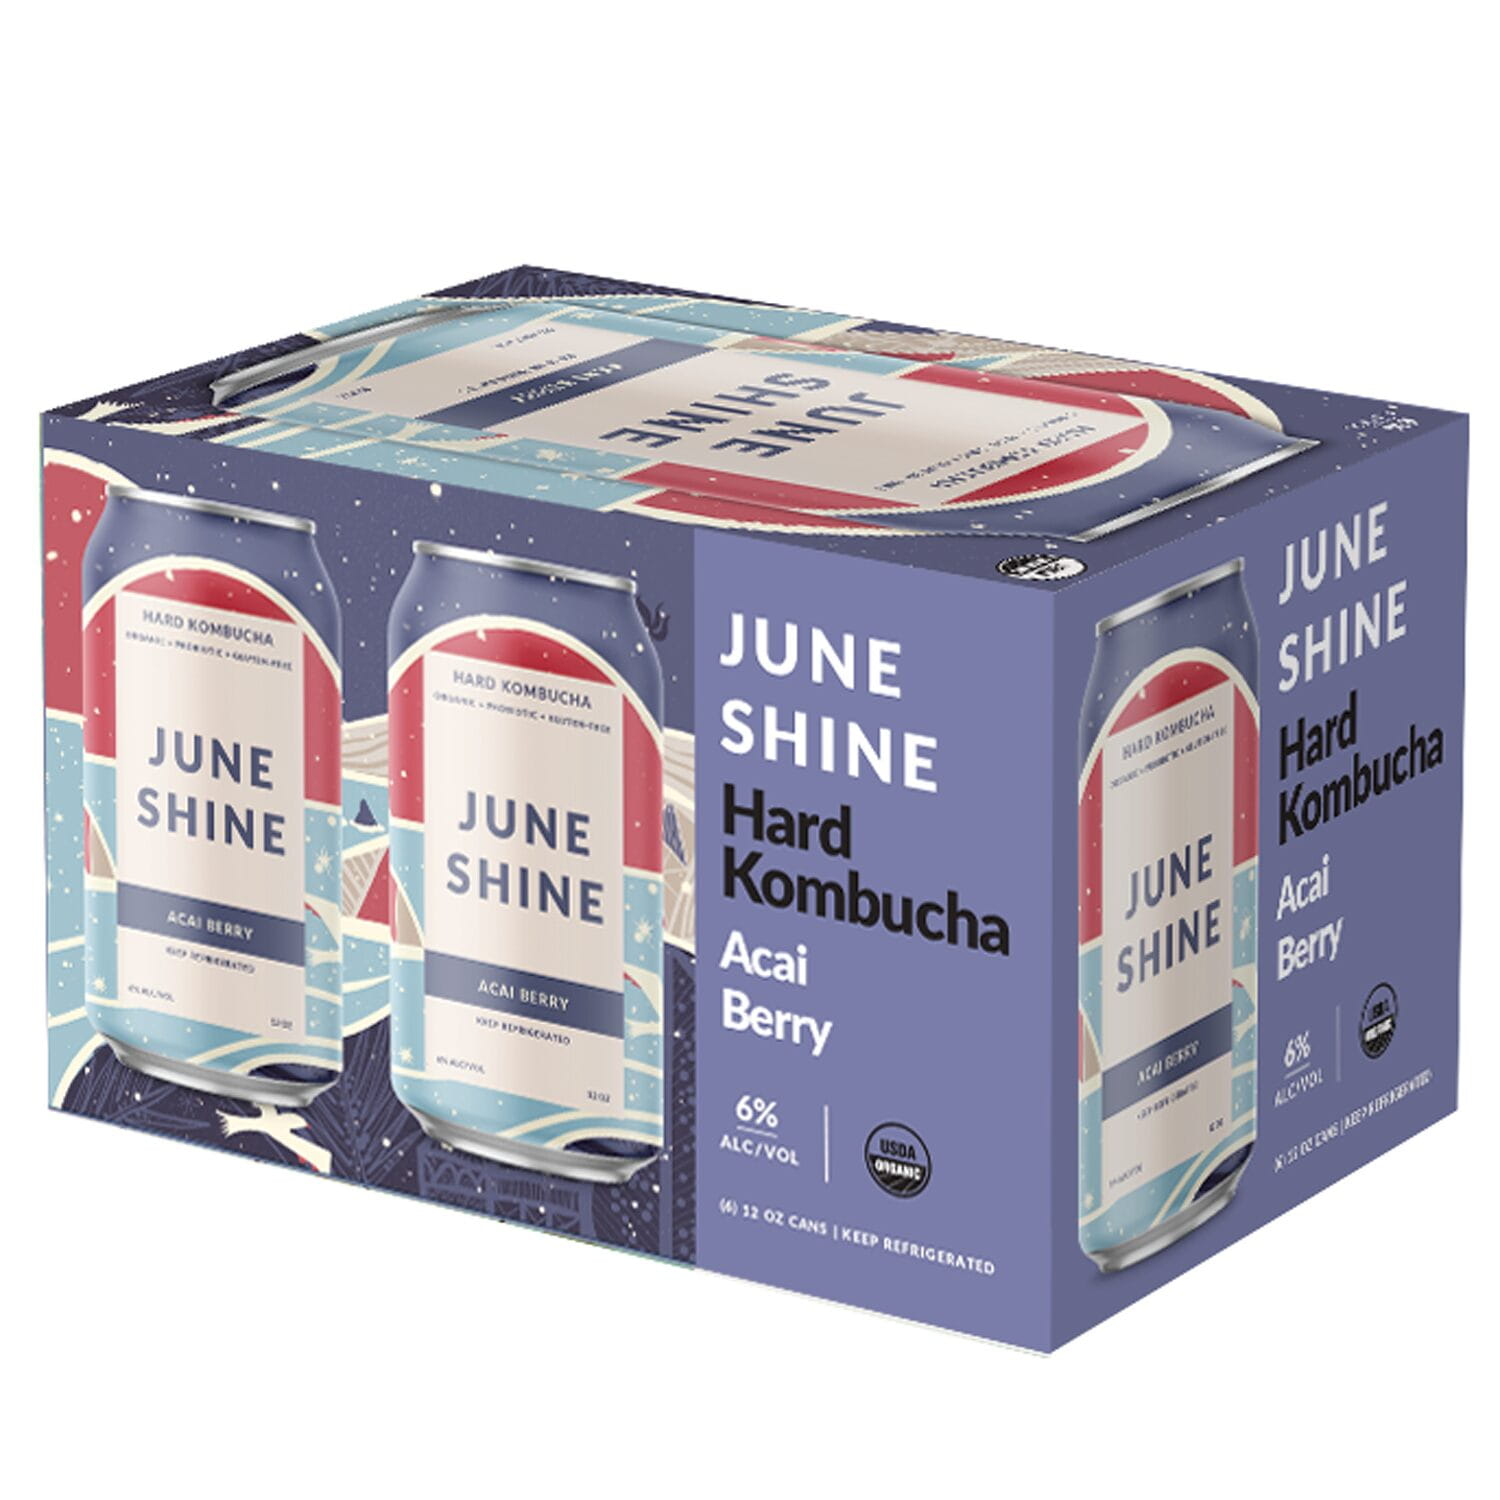 Juneshine Hard Kombucha Packaging